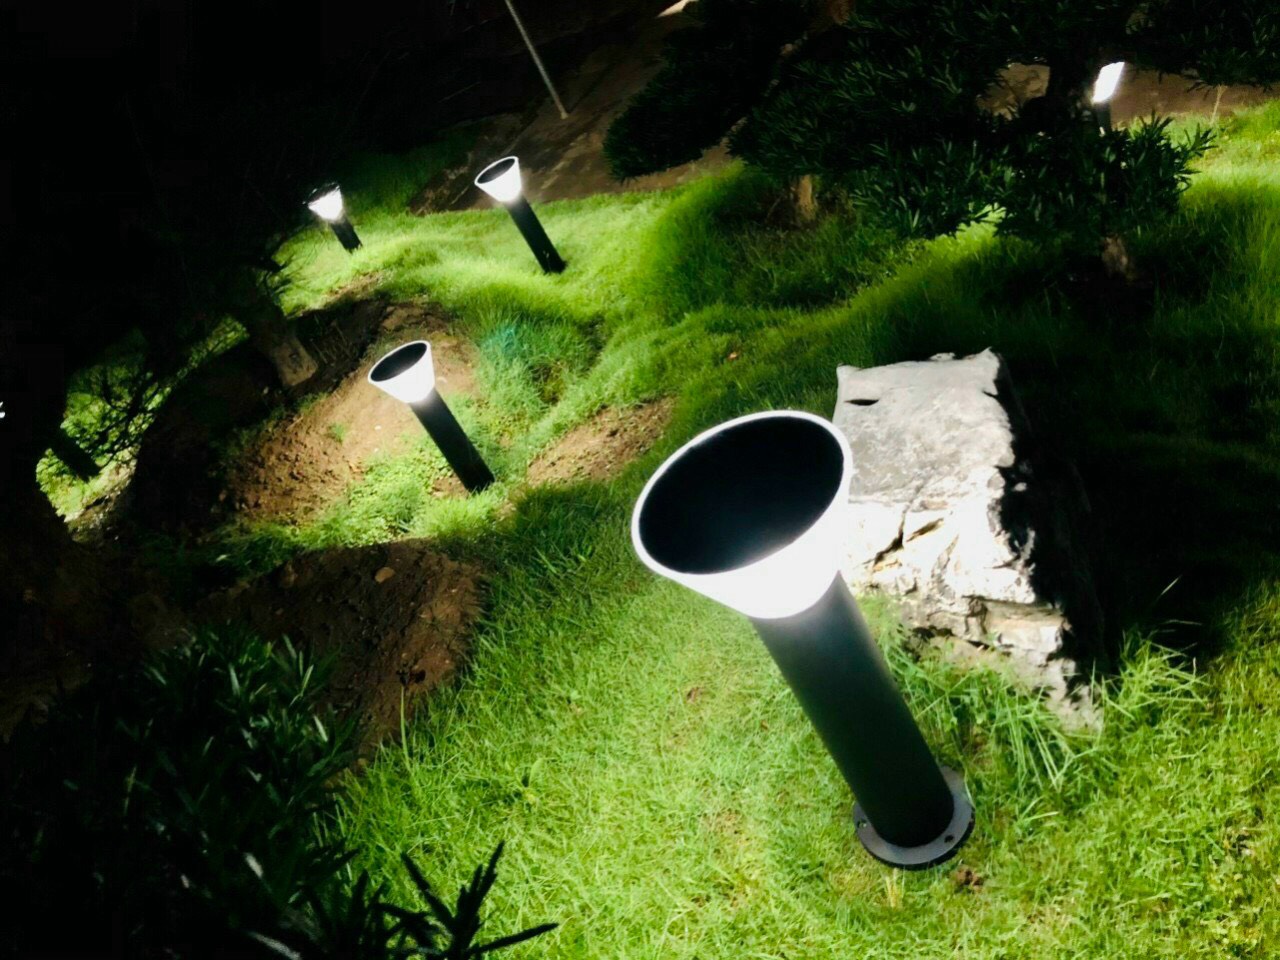 Đèn LED Trang Trí Sân Vườn NLMT Hình Trụ Cao Cấp Chiếu Sáng Lối Đi, Trang Trí Dẫn Lối Công Viên, Biệt Thự Sân Vườn